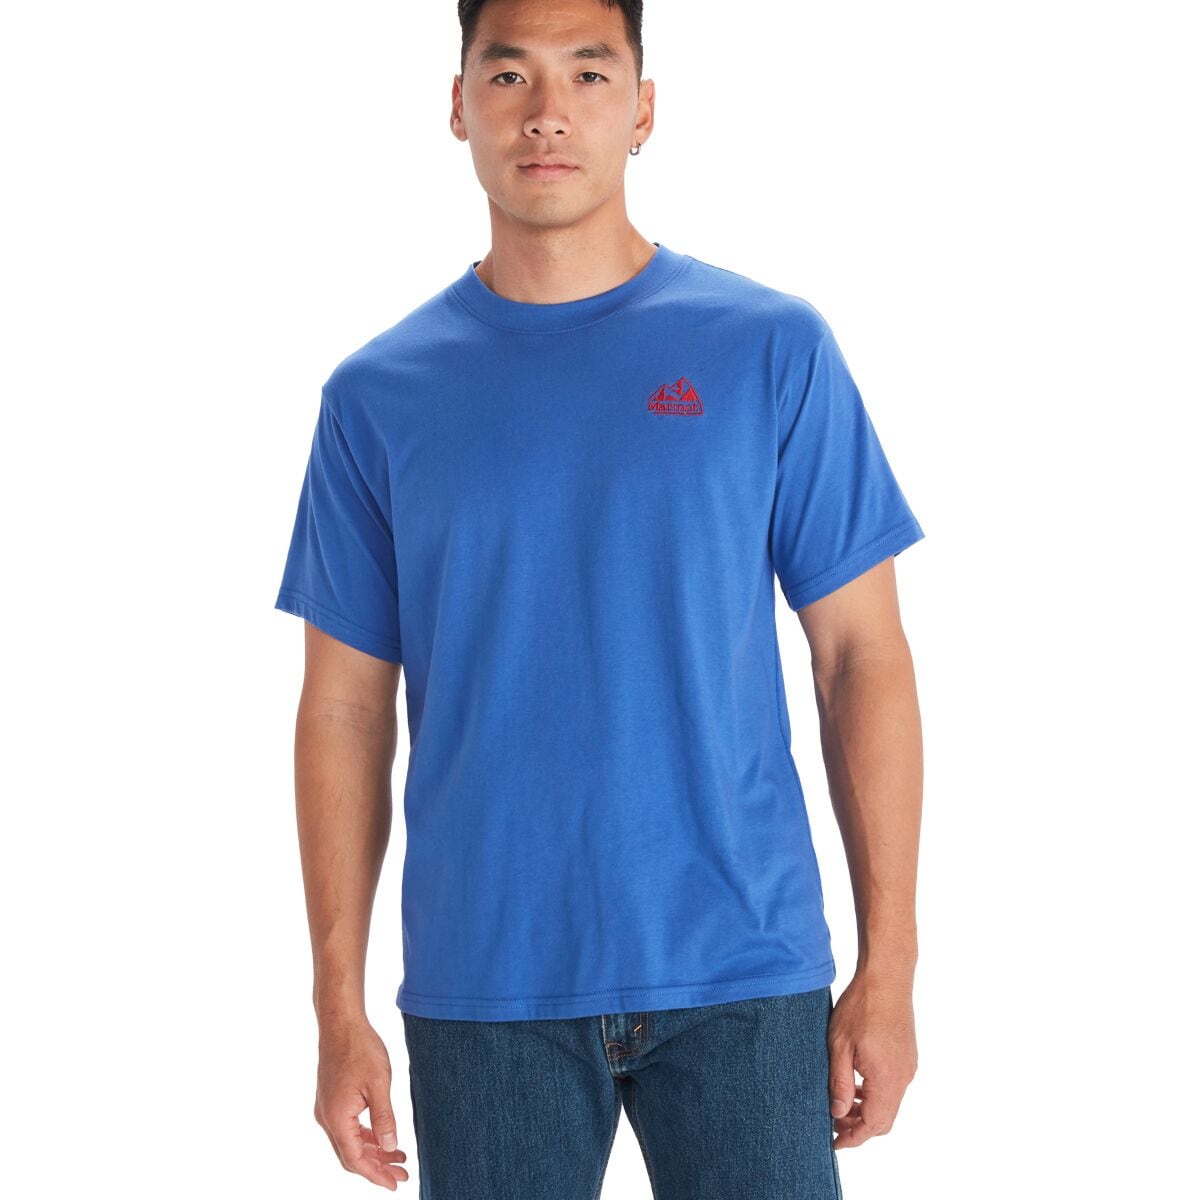 Marmot - Men's Peaks Short Sleeve T-Shirt